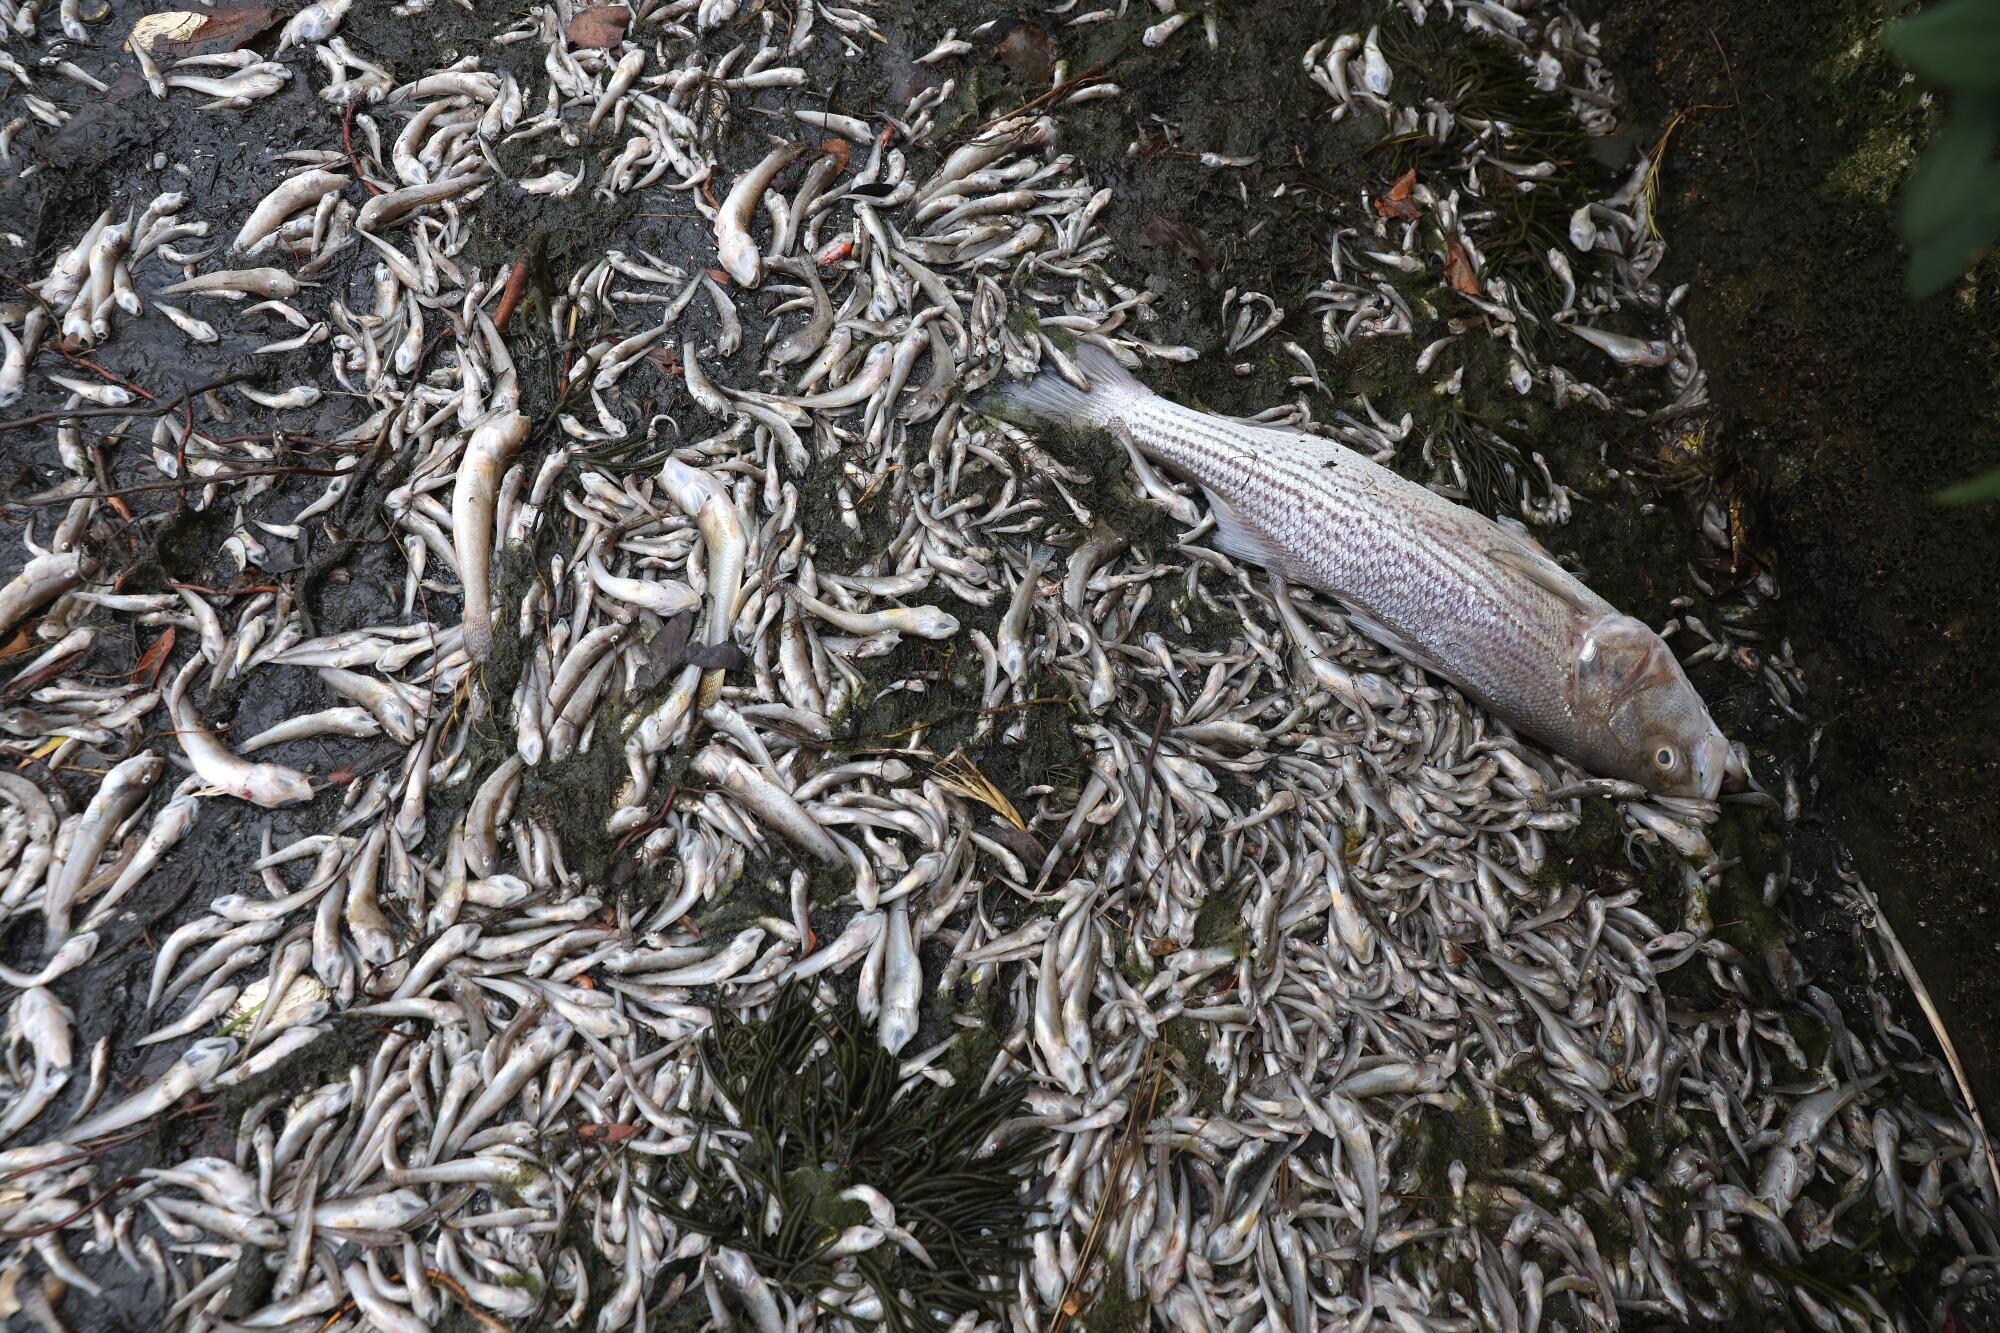 Photos: Toxic algae bloom kills fish in San Francisco Bay - Los Angeles ...